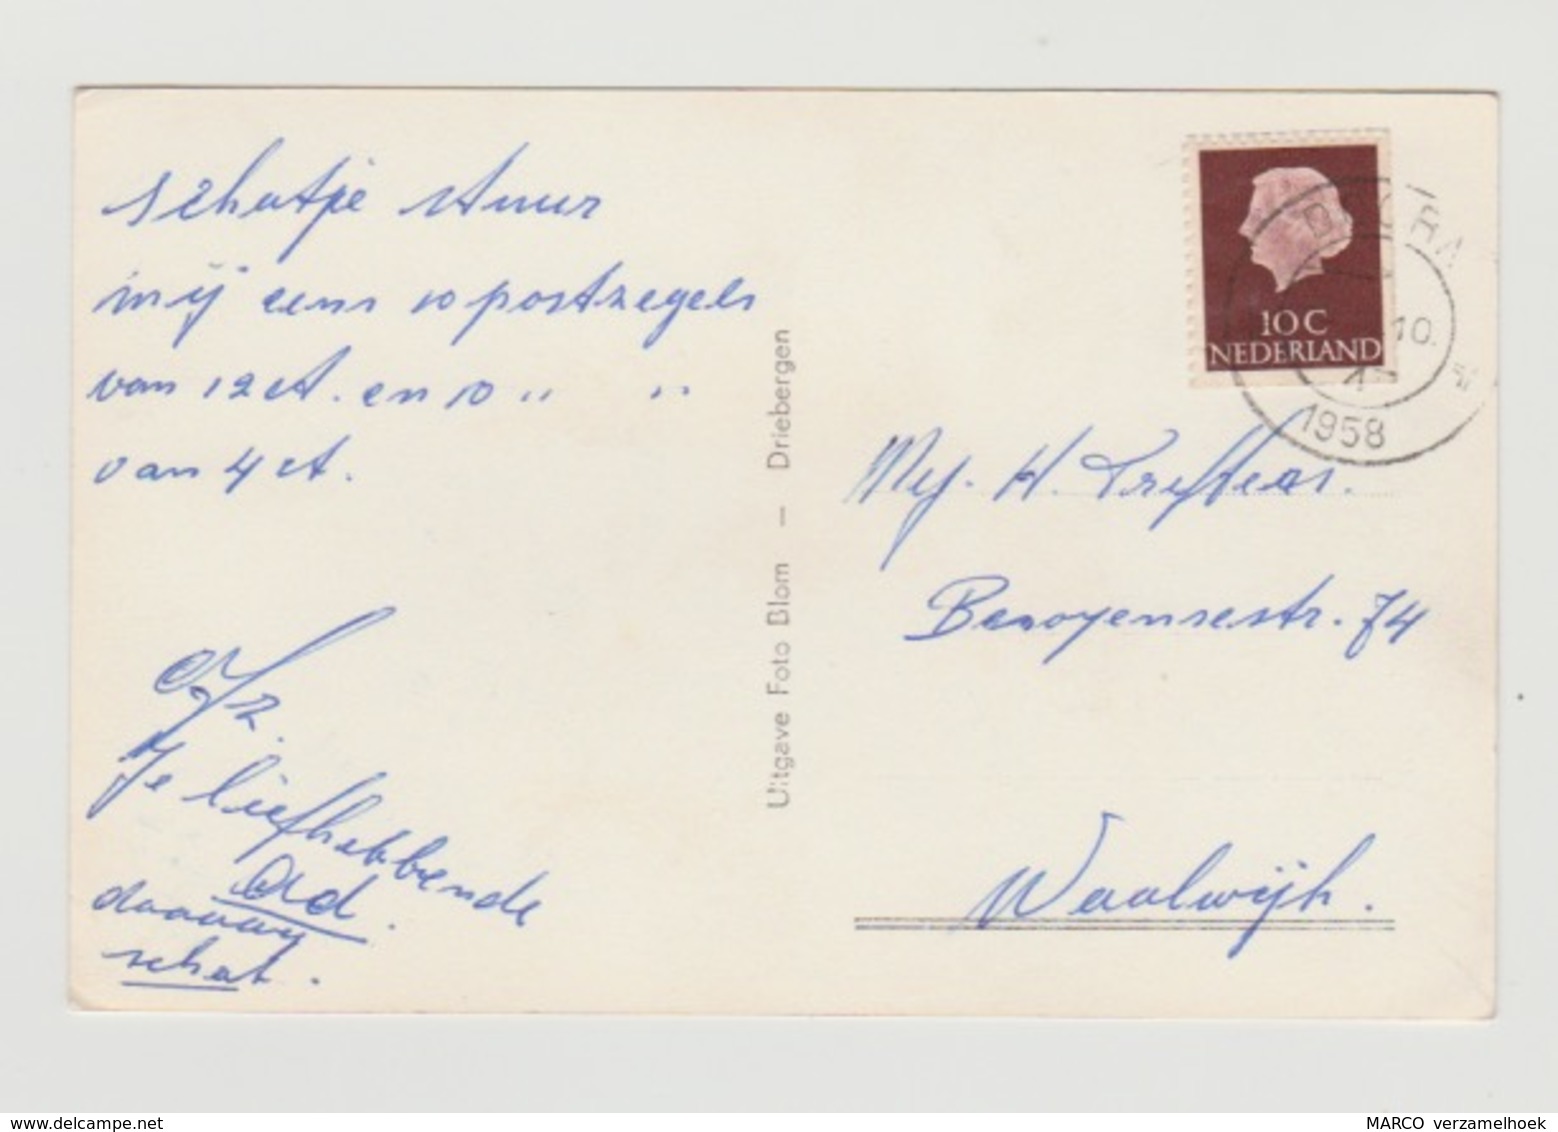 Ansichtkaart-postcard Van Braam Houckgeest Kazerne Doorn (NL) 1958 - Doorn